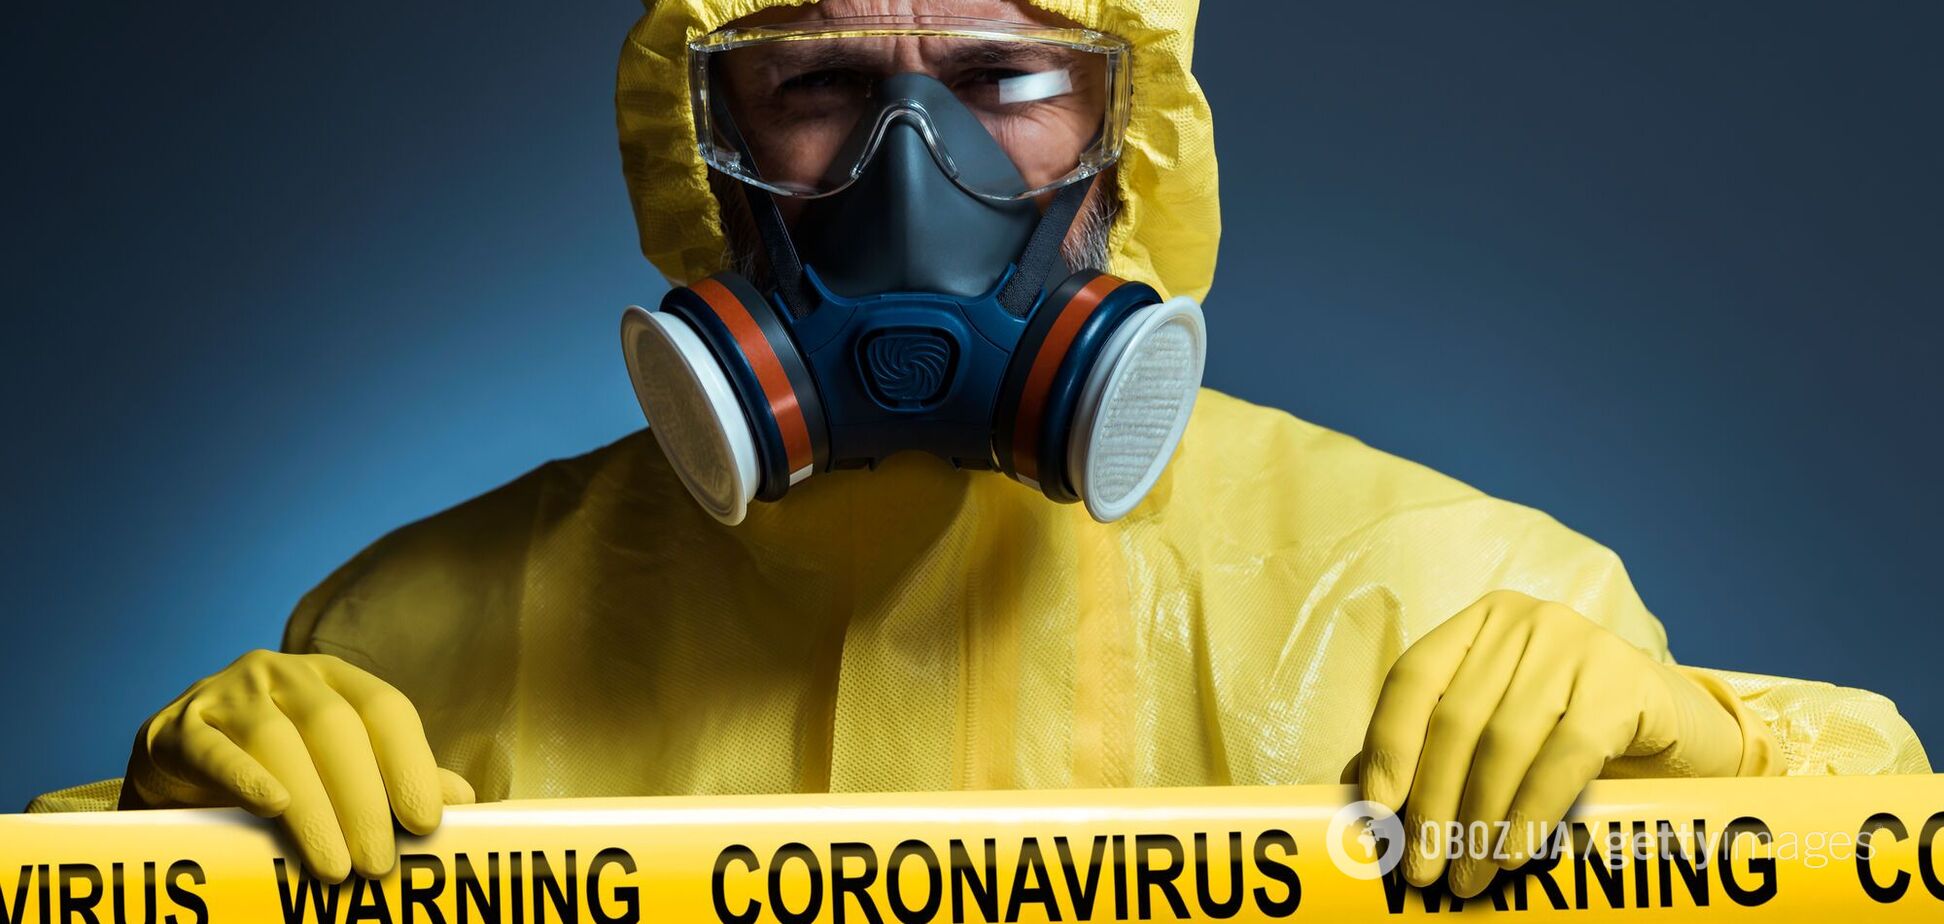 Коронавірус вразив ще 1,2 млн осіб: що відбувається в Україні та світі. Хроніка на 21 лютого